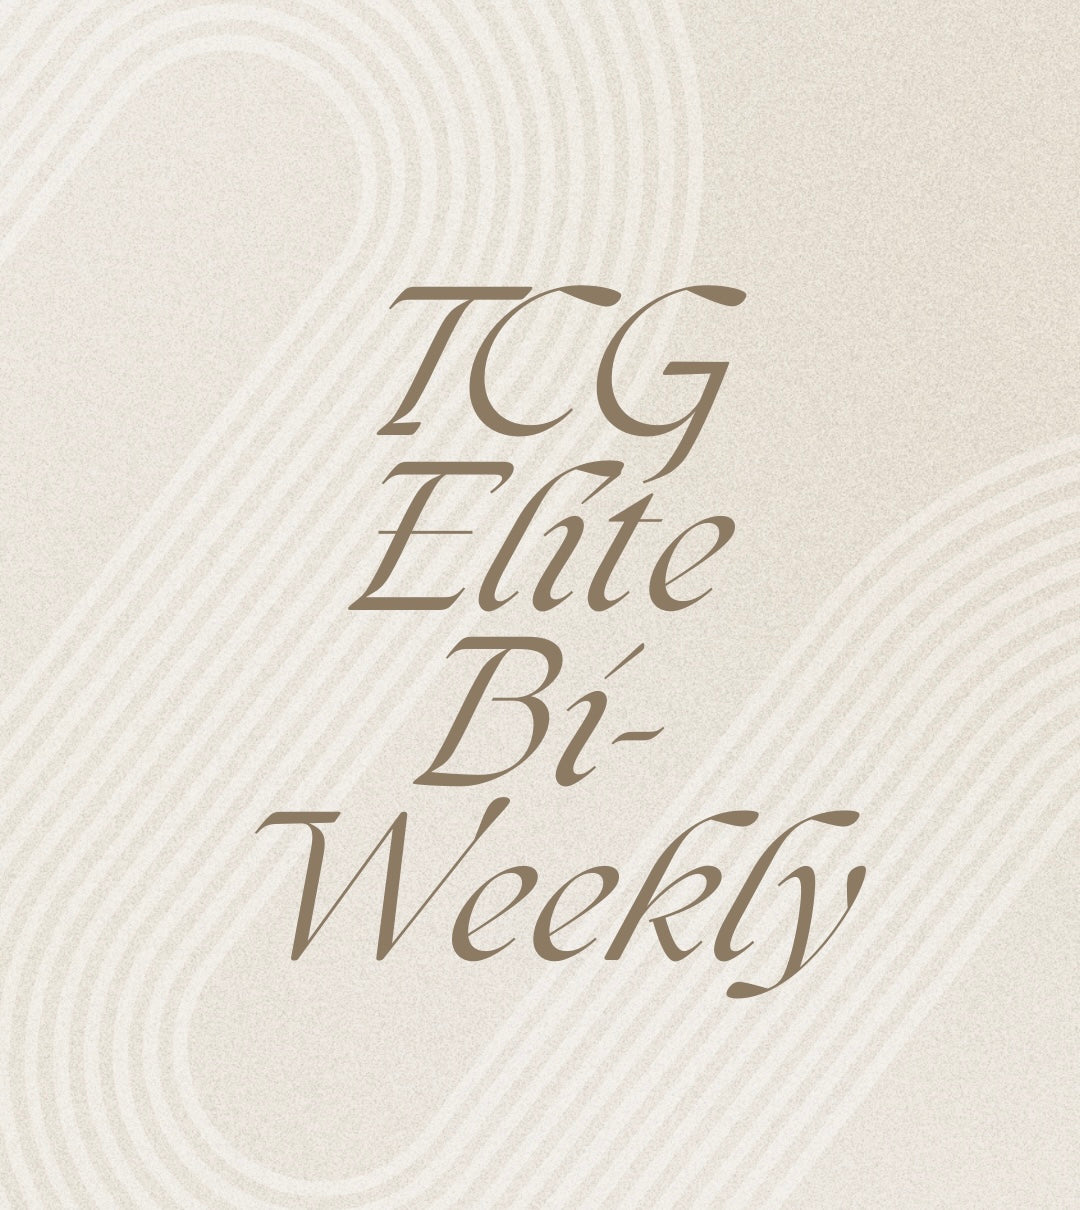 TCG Elite Bi-Weekly